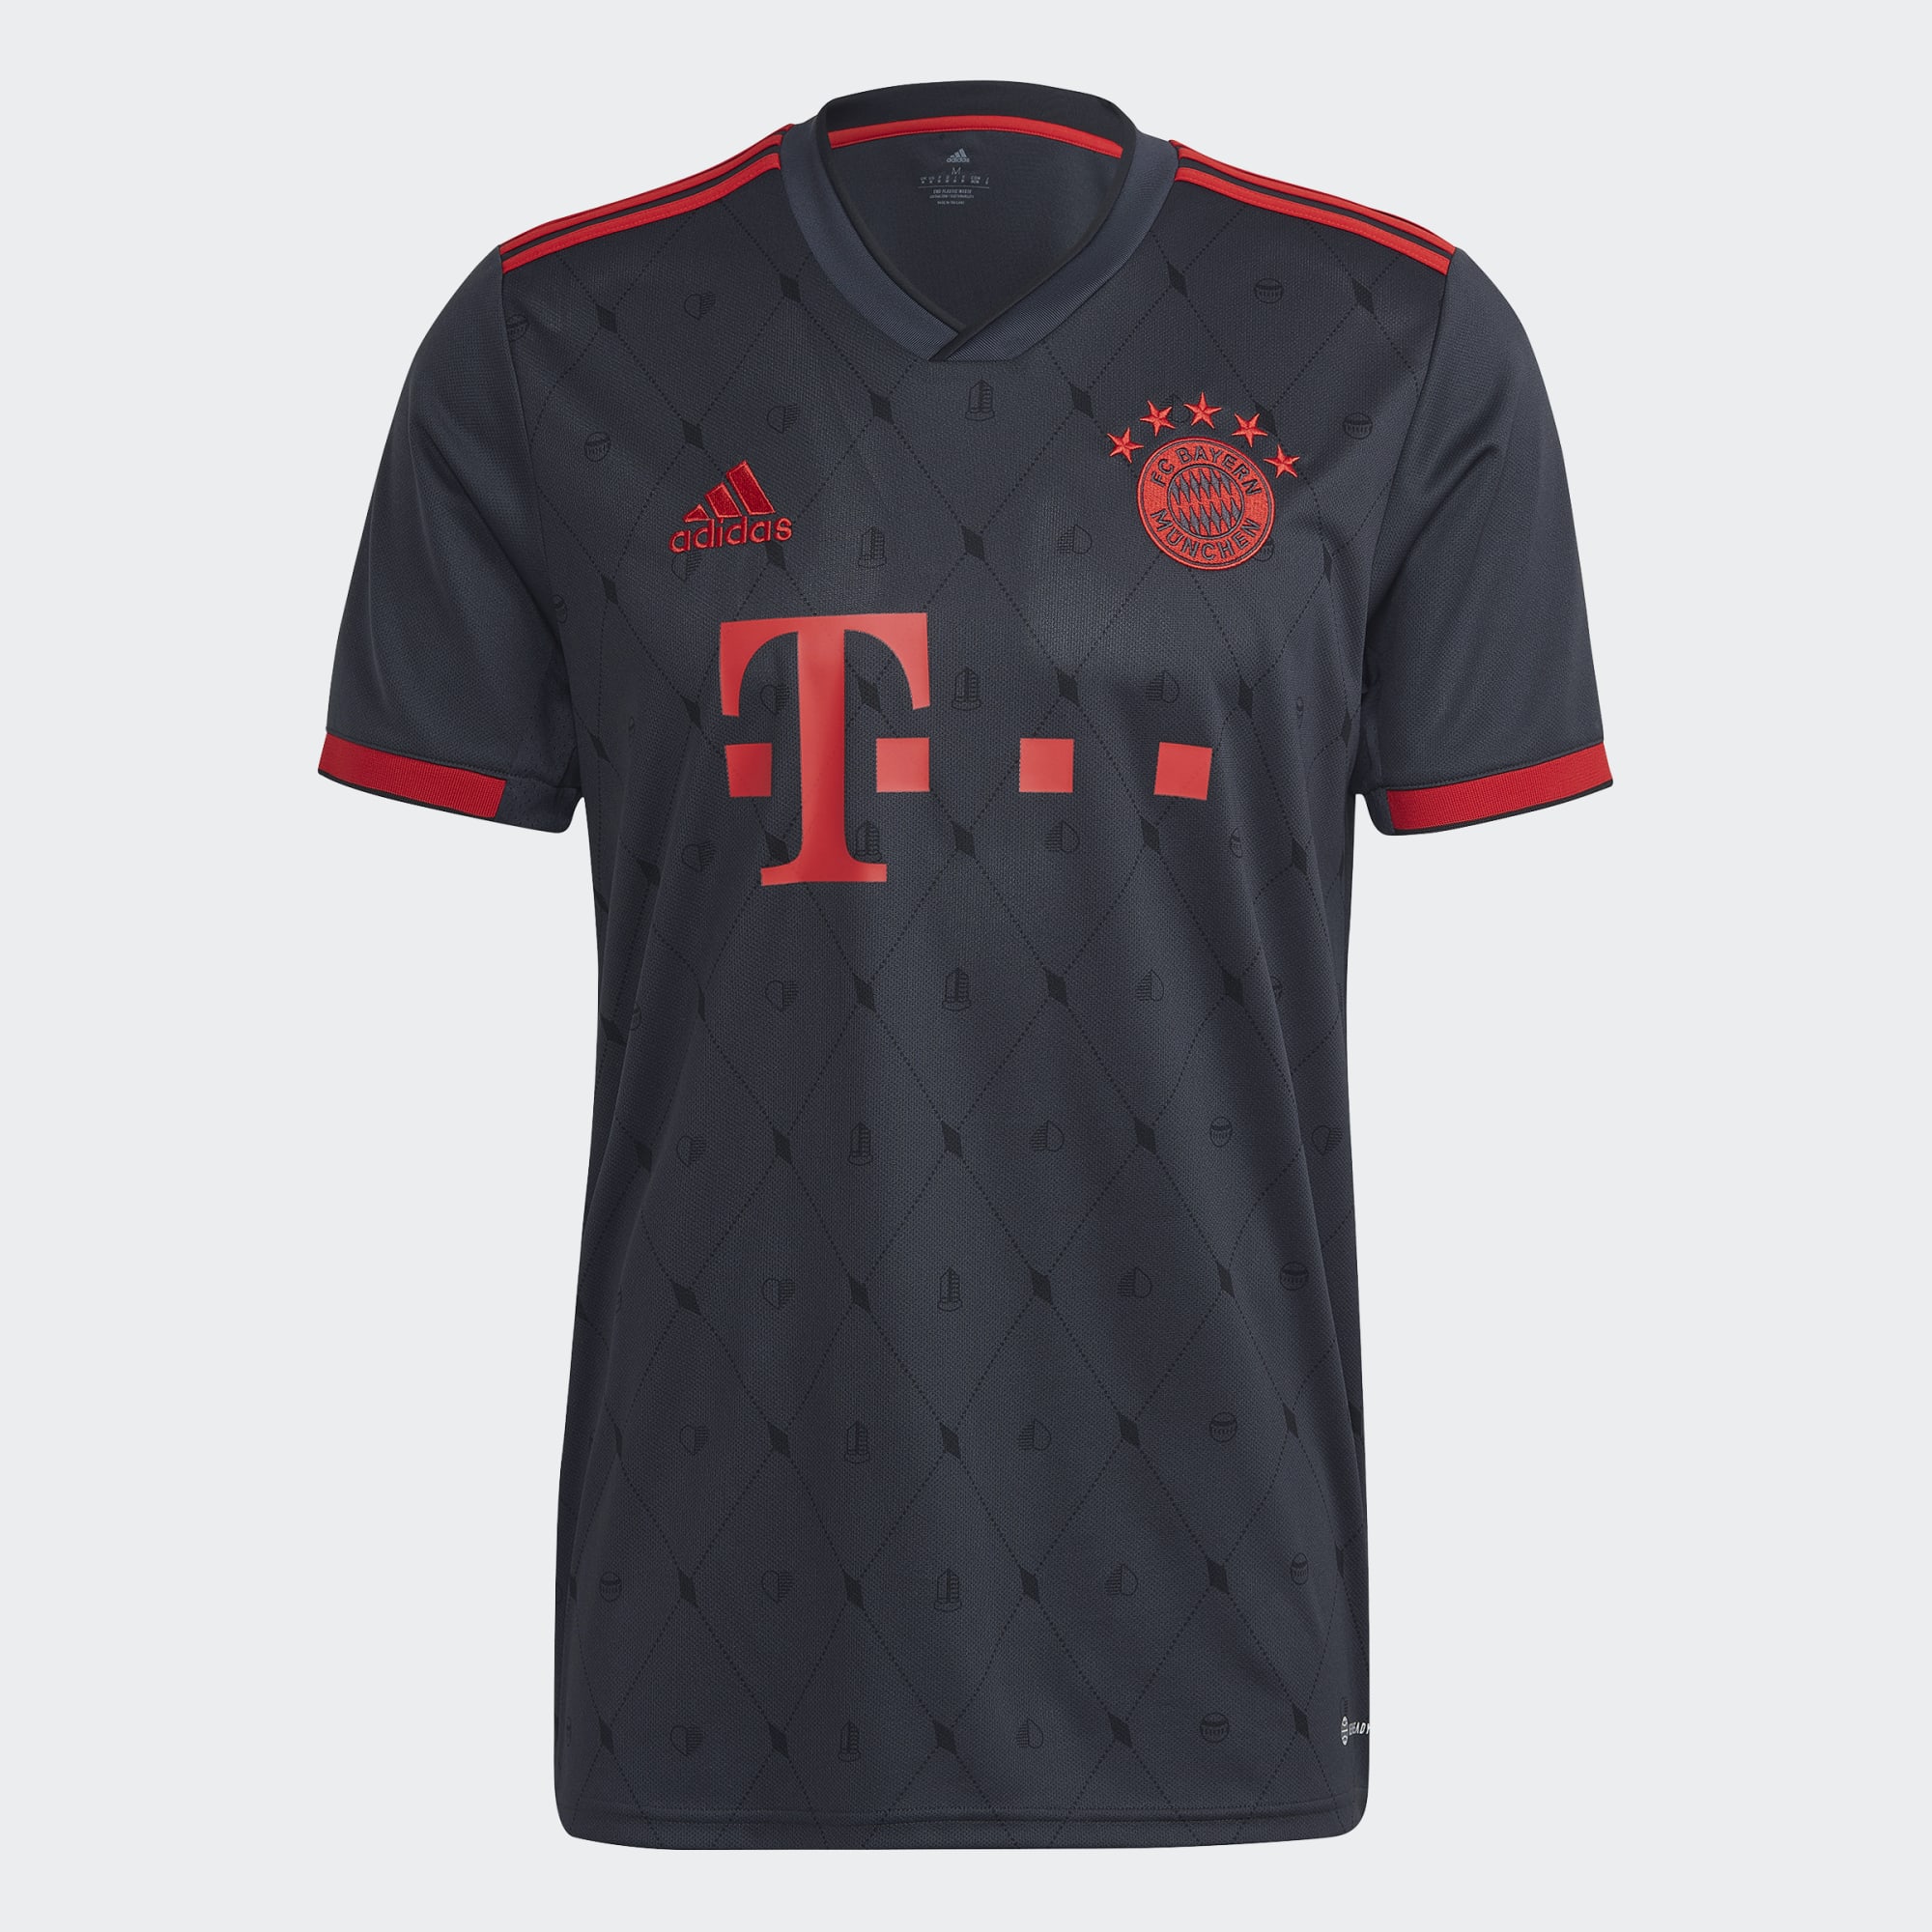 De lucht Belegering Bestuiver stefanssoccer.com:adidas Bayern Munich 22/23 Third Jersey - Dark Grey